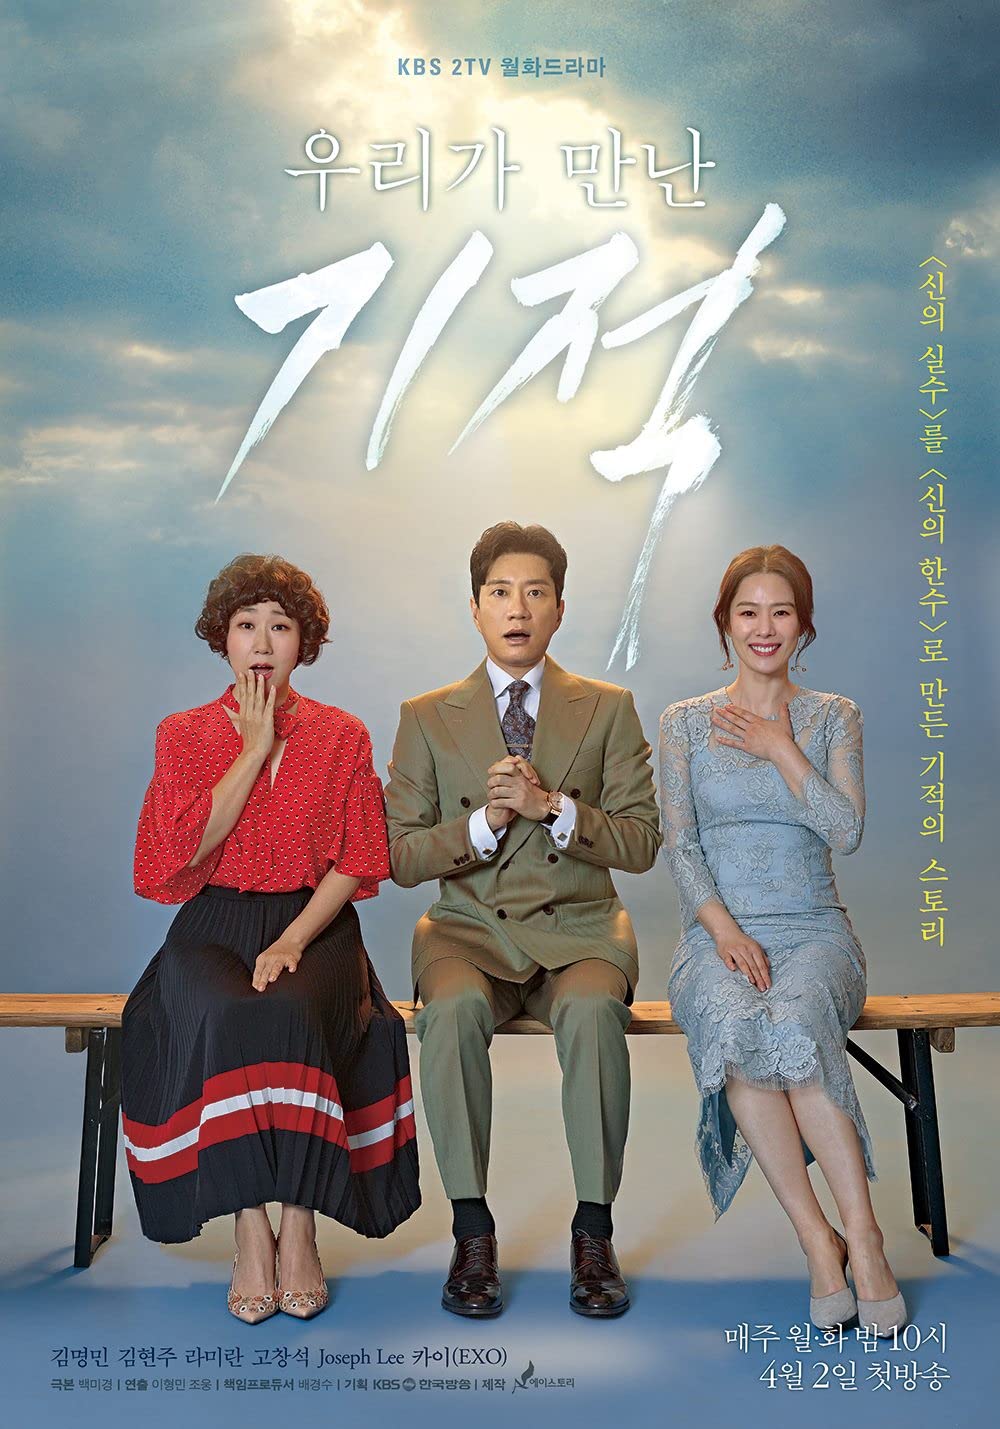 11 Drama Korea kisahkan malaikat maut yang penuh karisma, berwibawa